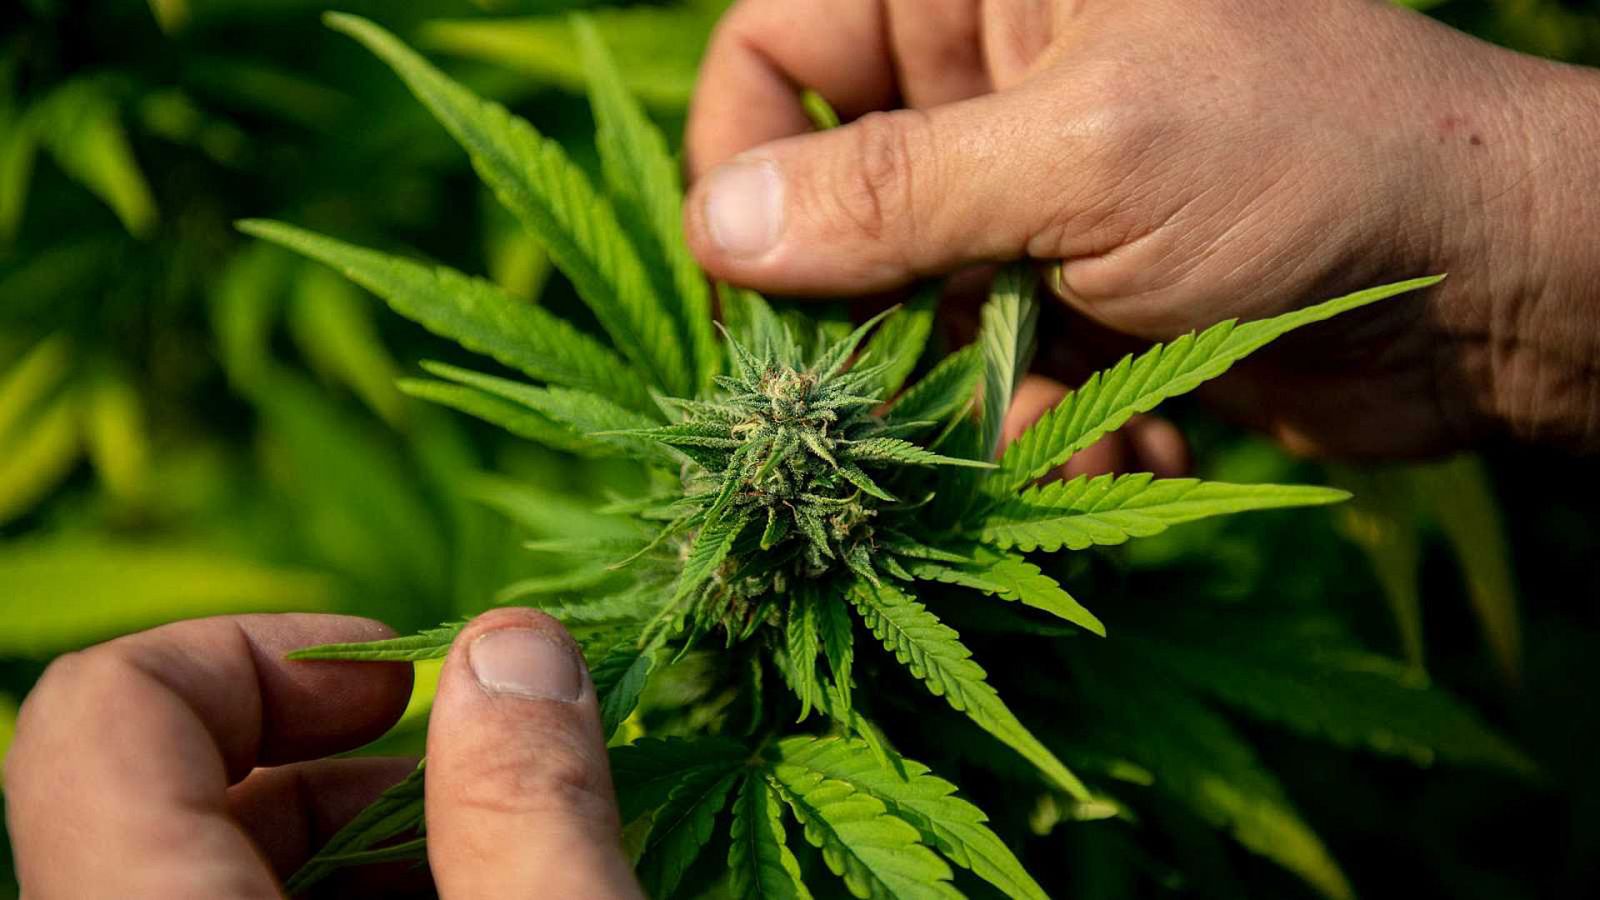 La primera iniciativa para regular el cannabis ha fracasado esta semana en el Congreso